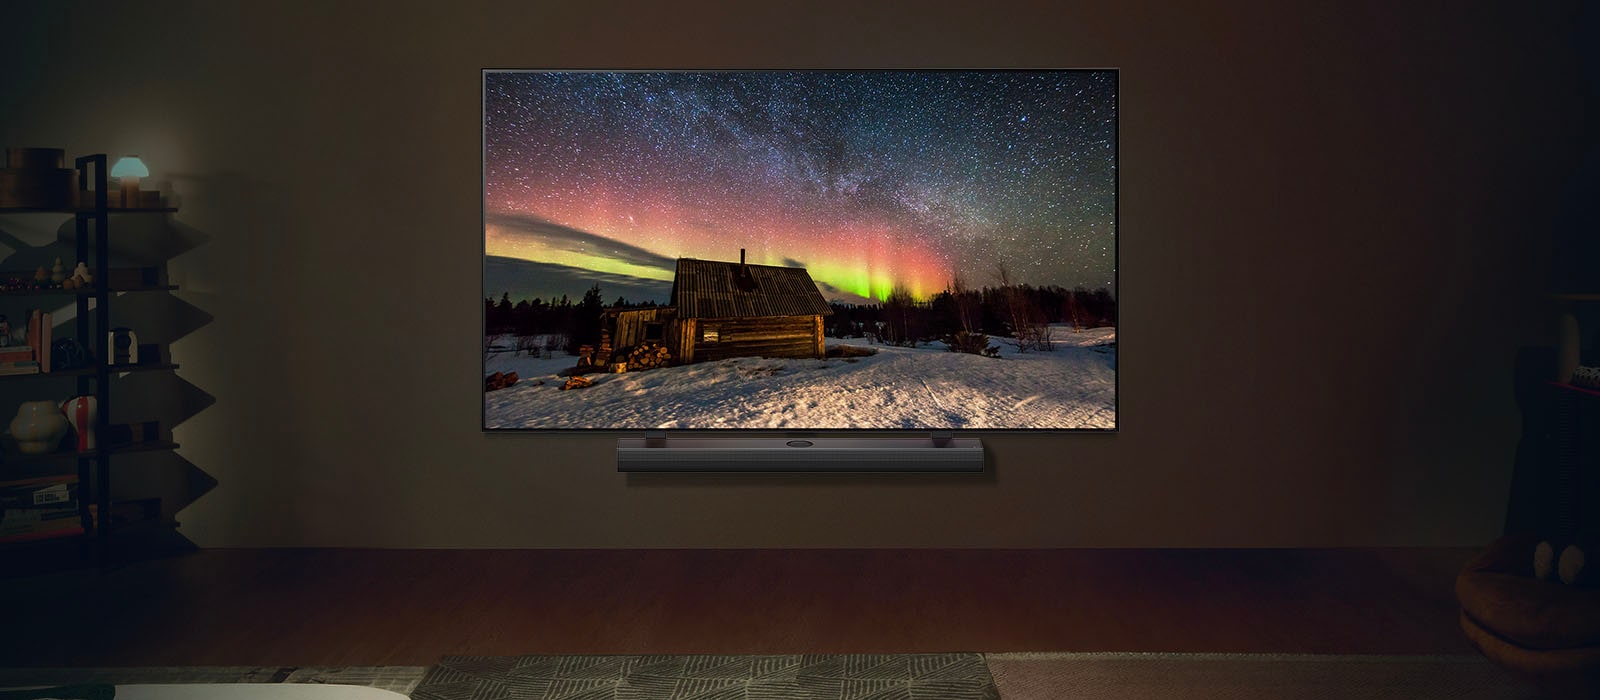 LG TV y una barra se sonido LG en un espacio moderno durante la noche. La imagen de la aurora boreal se muestra con los niveles de brillo ideales